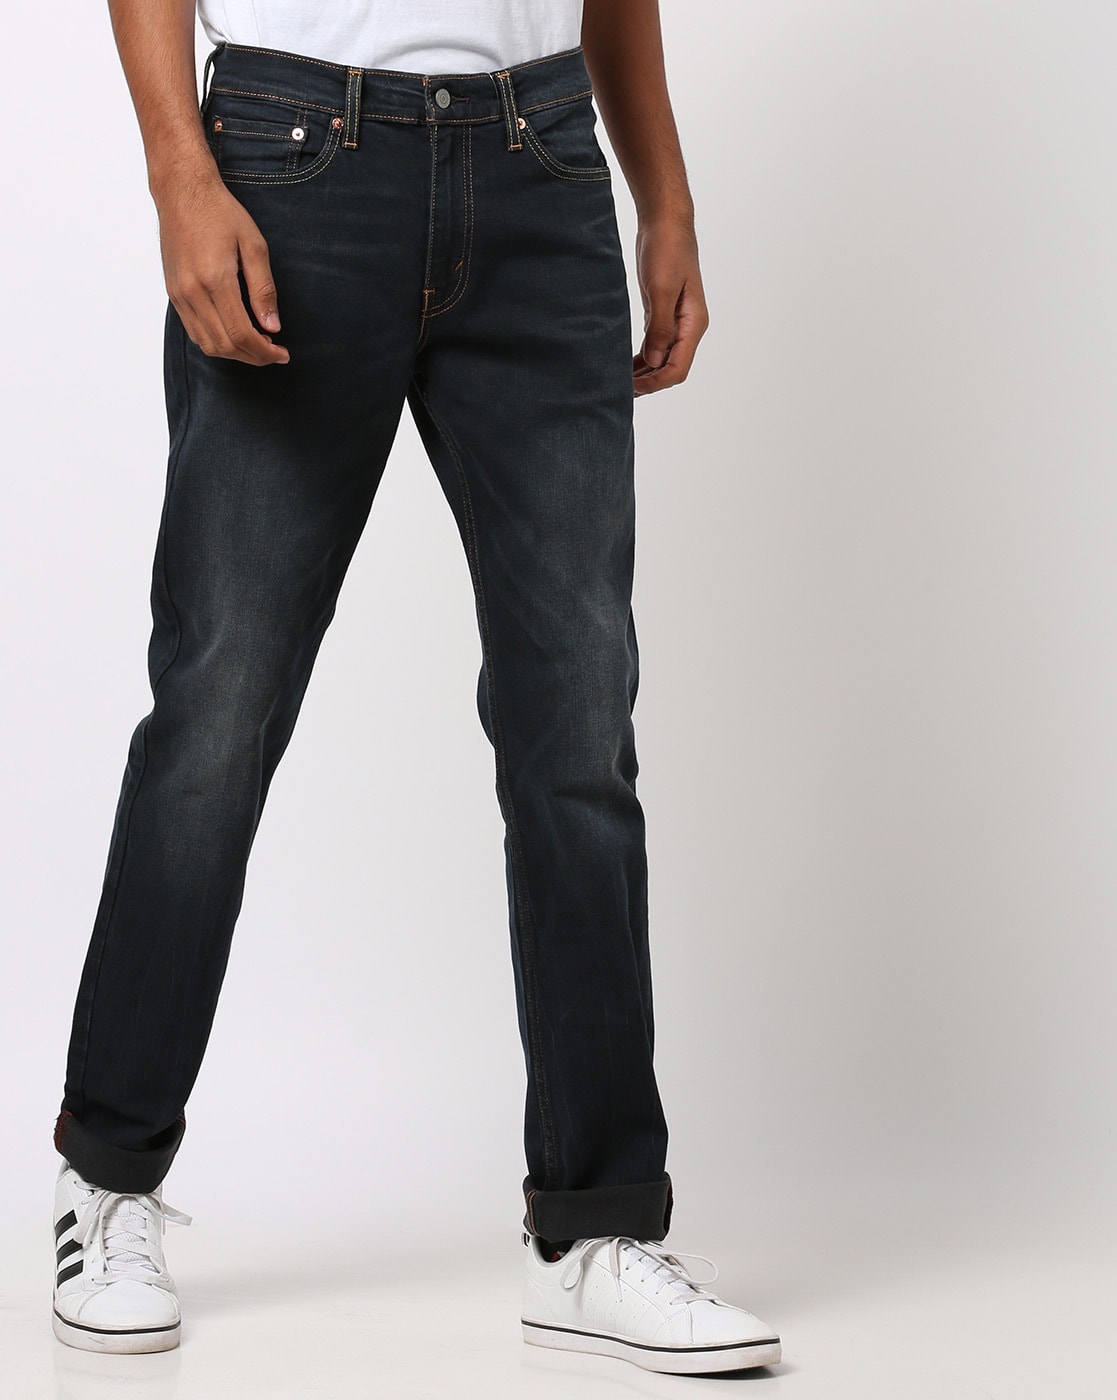 levis 511 blue jeans